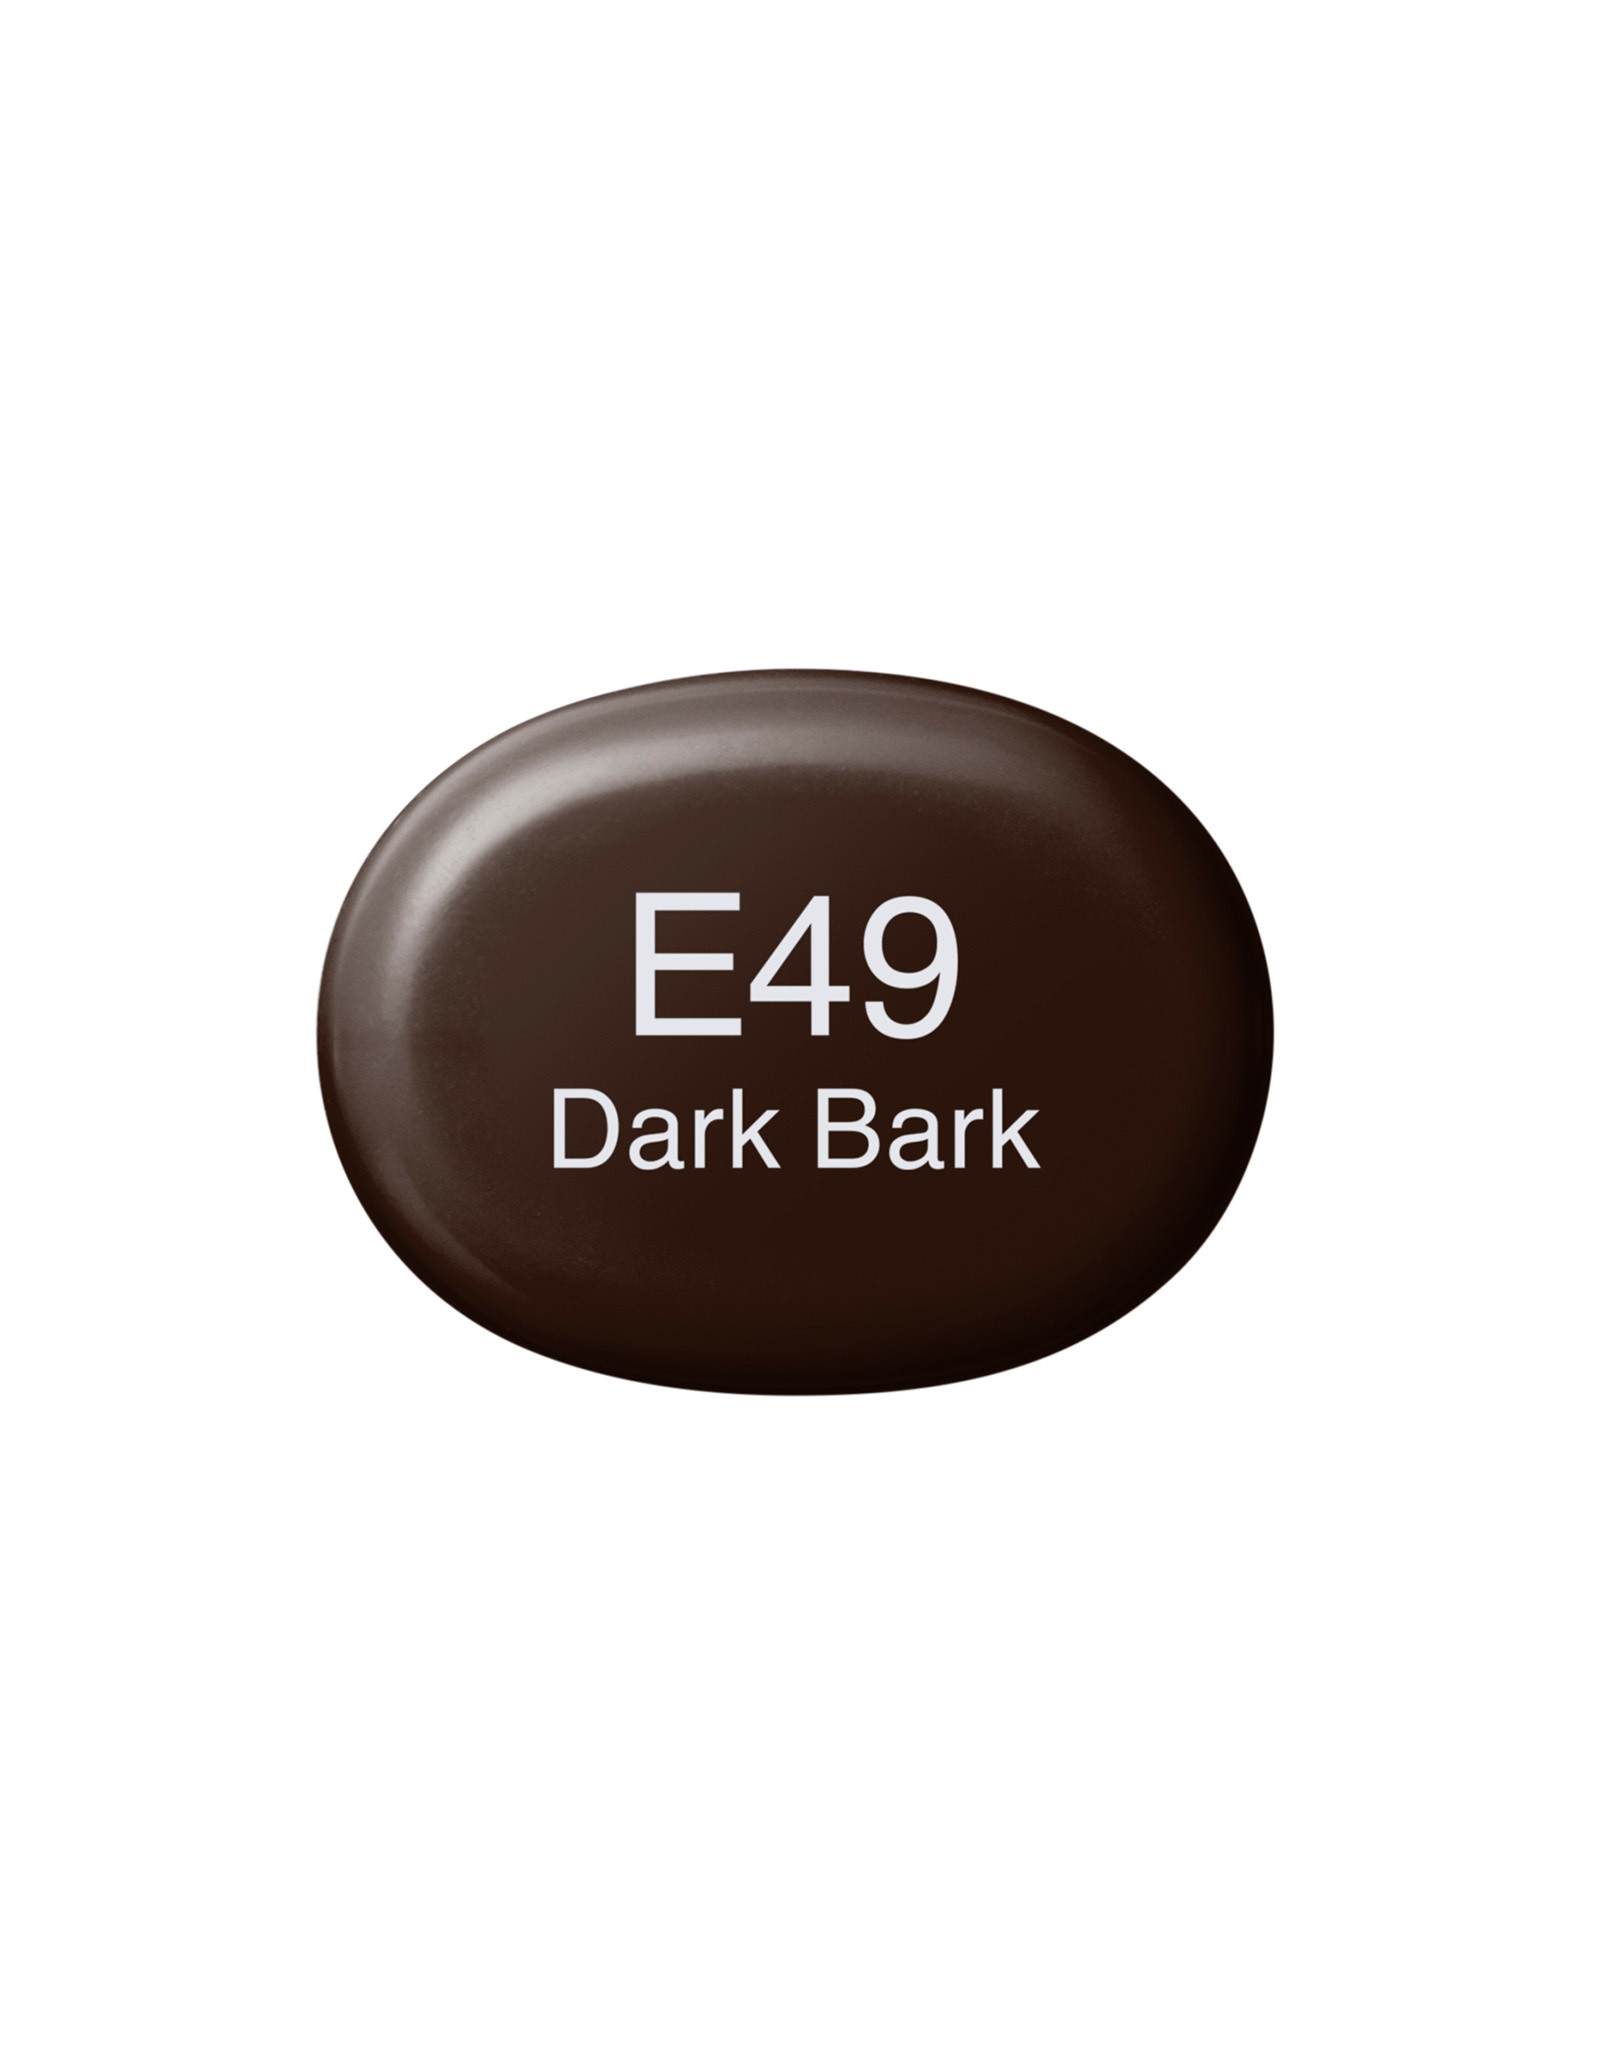 COPIC COPIC Sketch Marker E49 Dark Bark